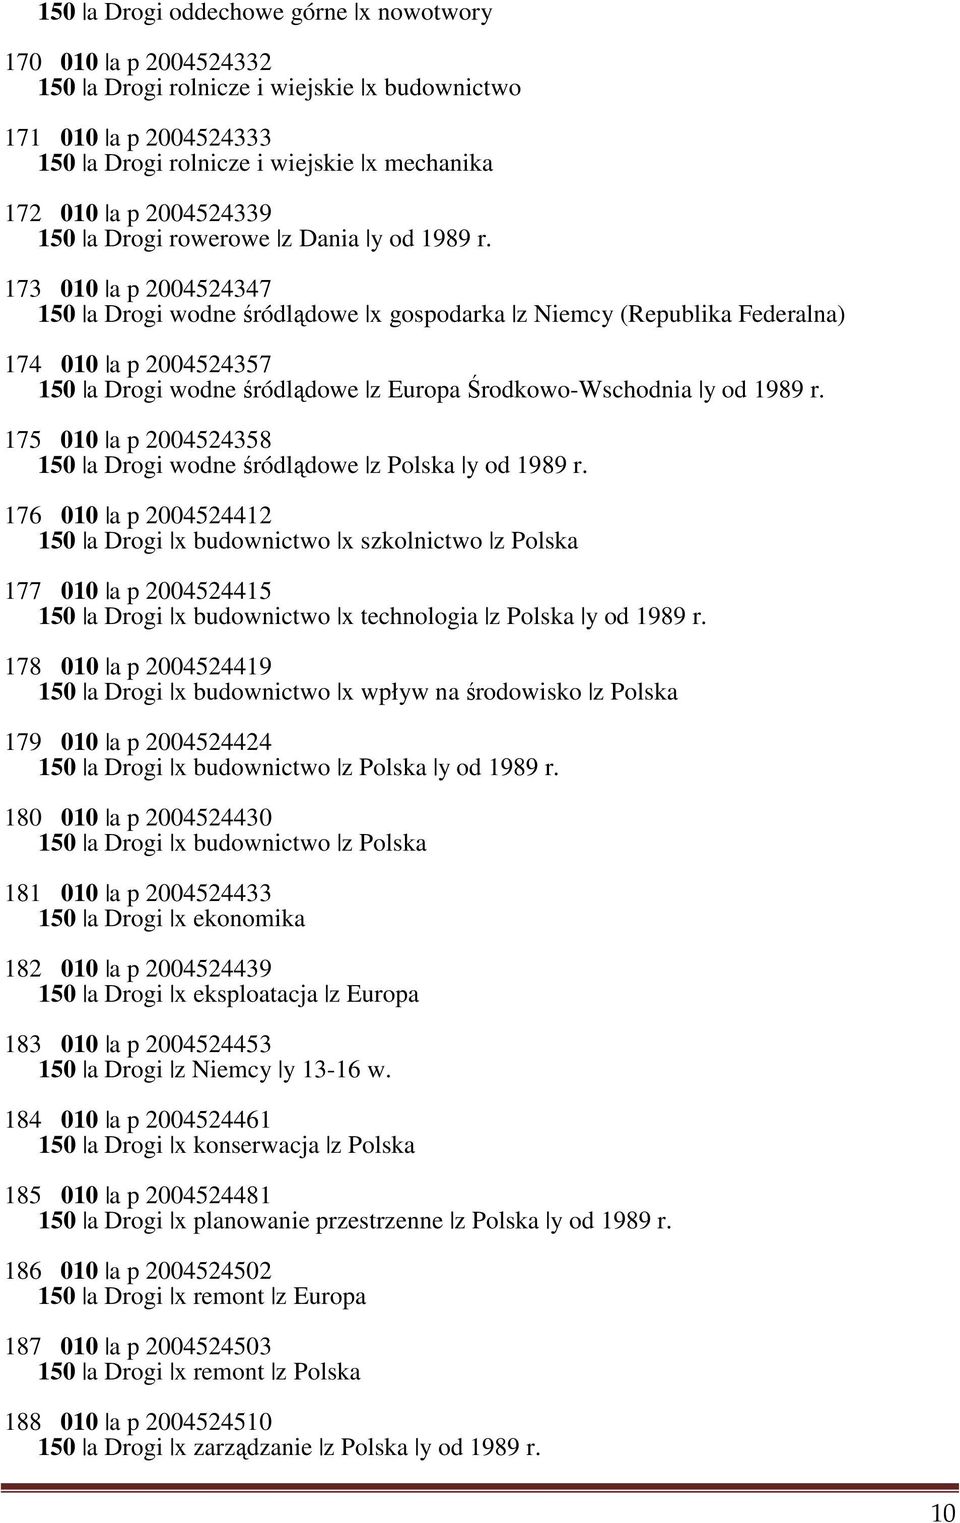 173 010 a p 2004524347 150 a Drogi wodne śródlądowe x gospodarka z Niemcy (Republika Federalna) 174 010 a p 2004524357 150 a Drogi wodne śródlądowe z Europa Środkowo-Wschodnia y od 1989 r.